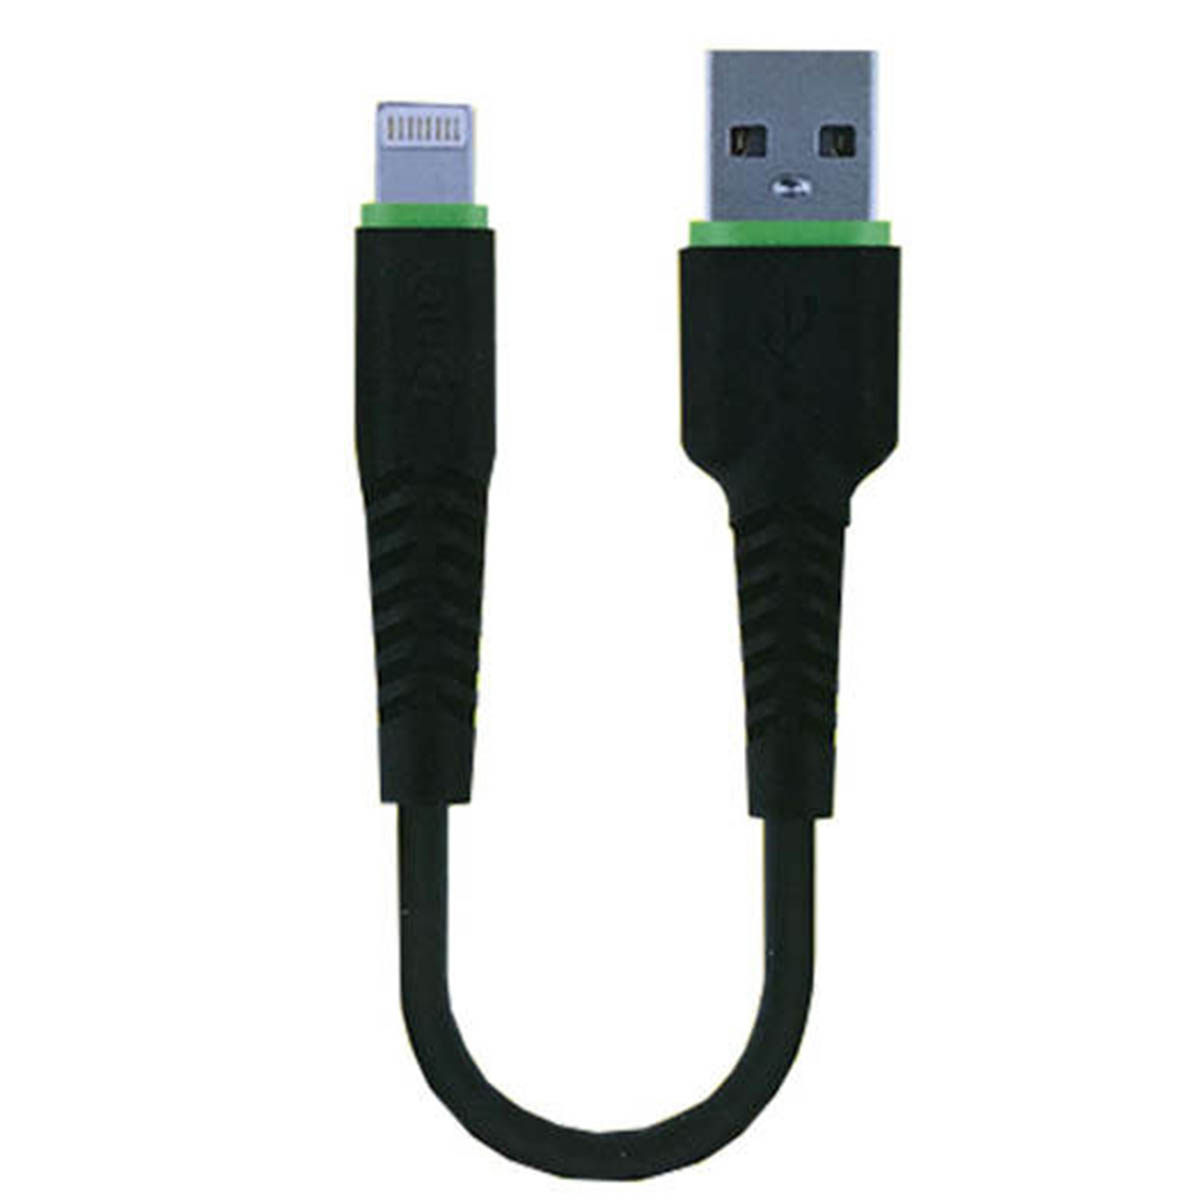 USB кабель BUDI для Lightning 8-pin модель M8J150L20-BLK, быстрая зарядка, USB 2.0 длина 20 cм, цвет черный